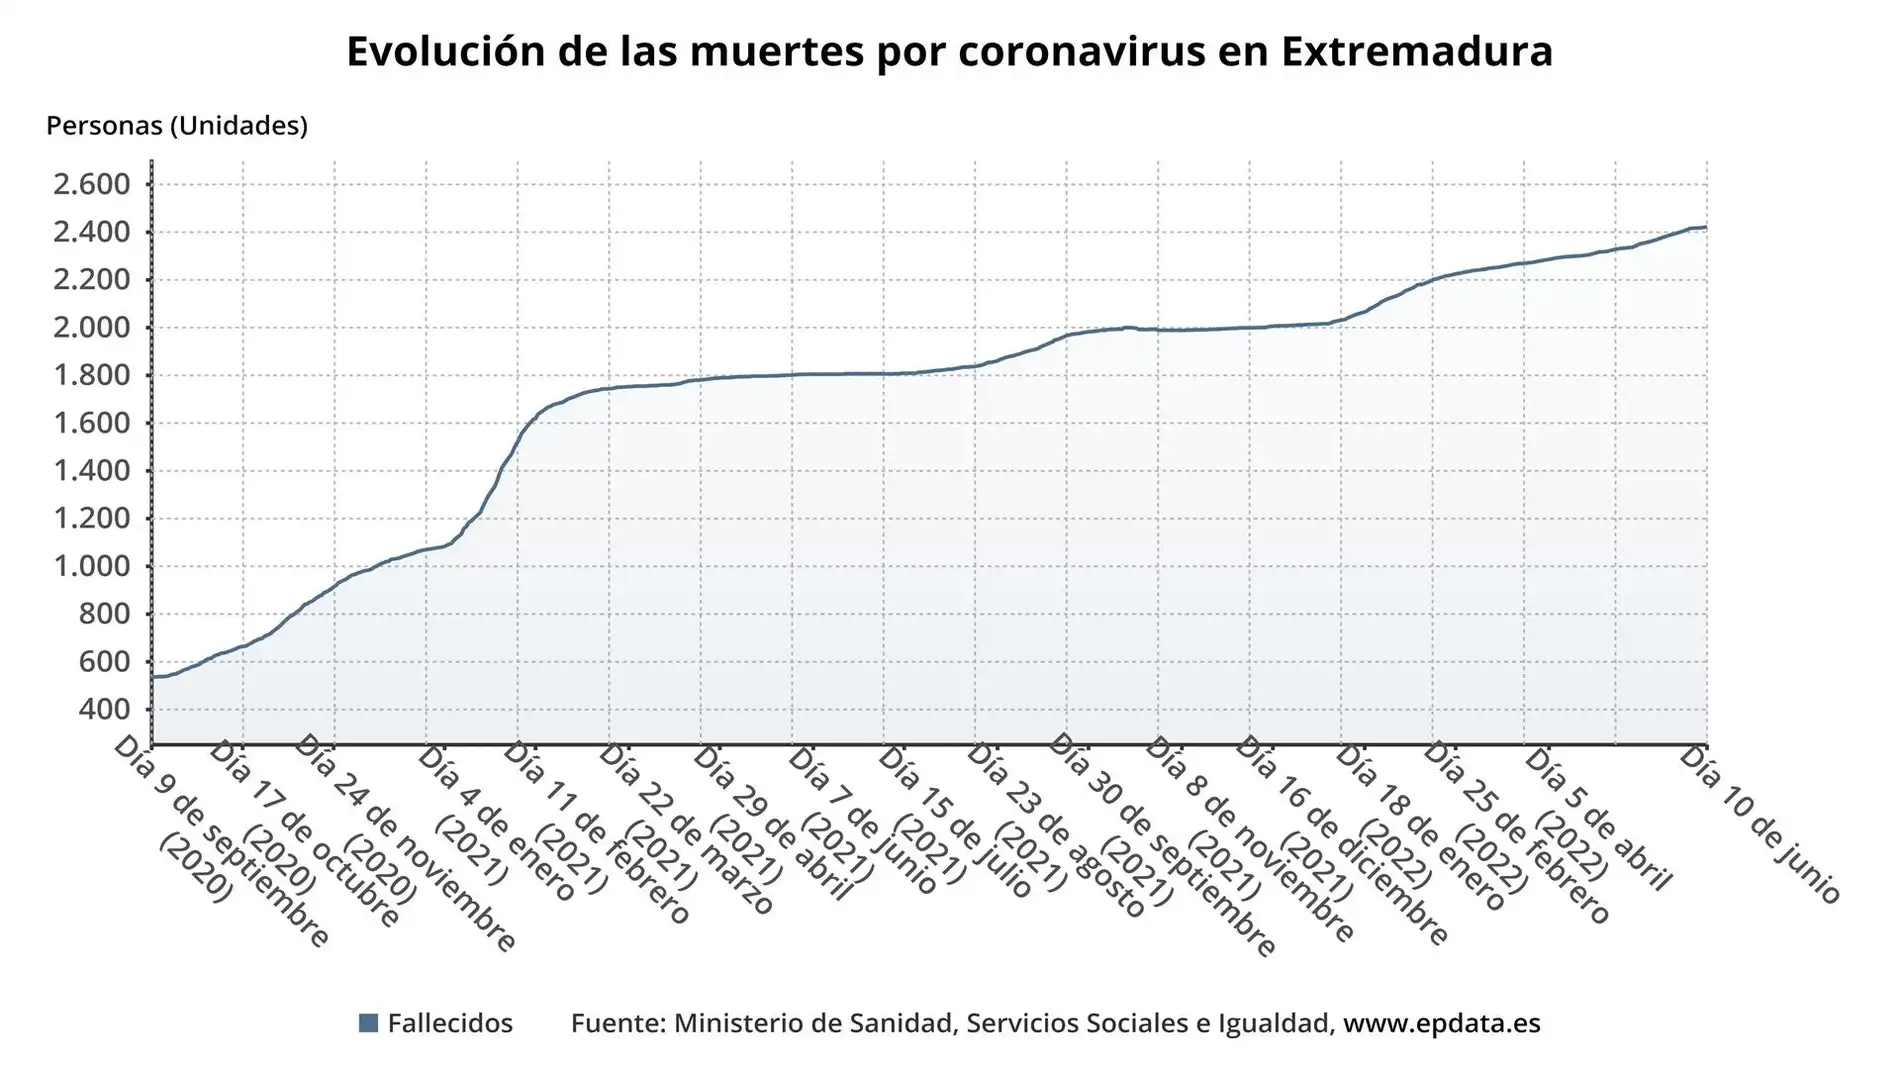 Evolución de las muertes por coronavirus en Extremadura desde el inicio de la pandemia